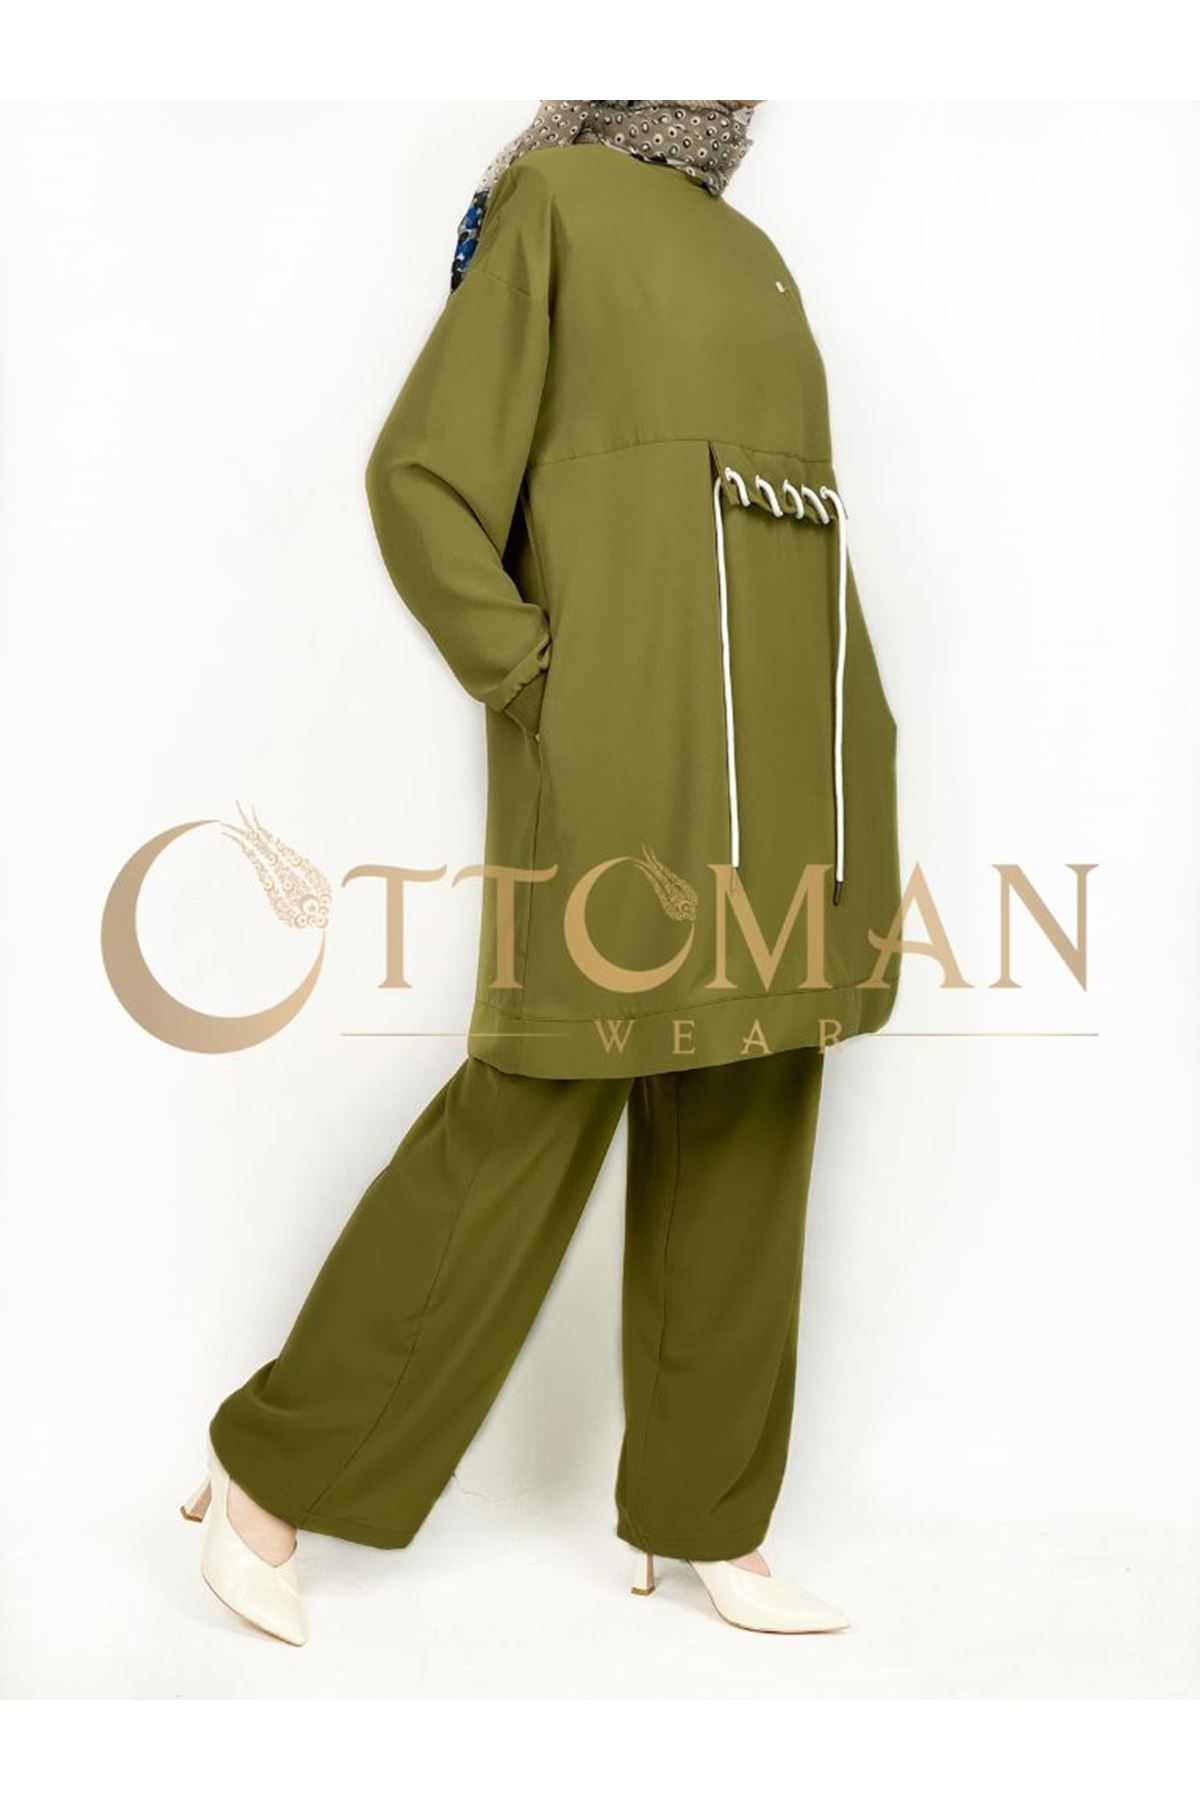 OTW633 Armine Pantolonlu Takım Yağ Yeşili